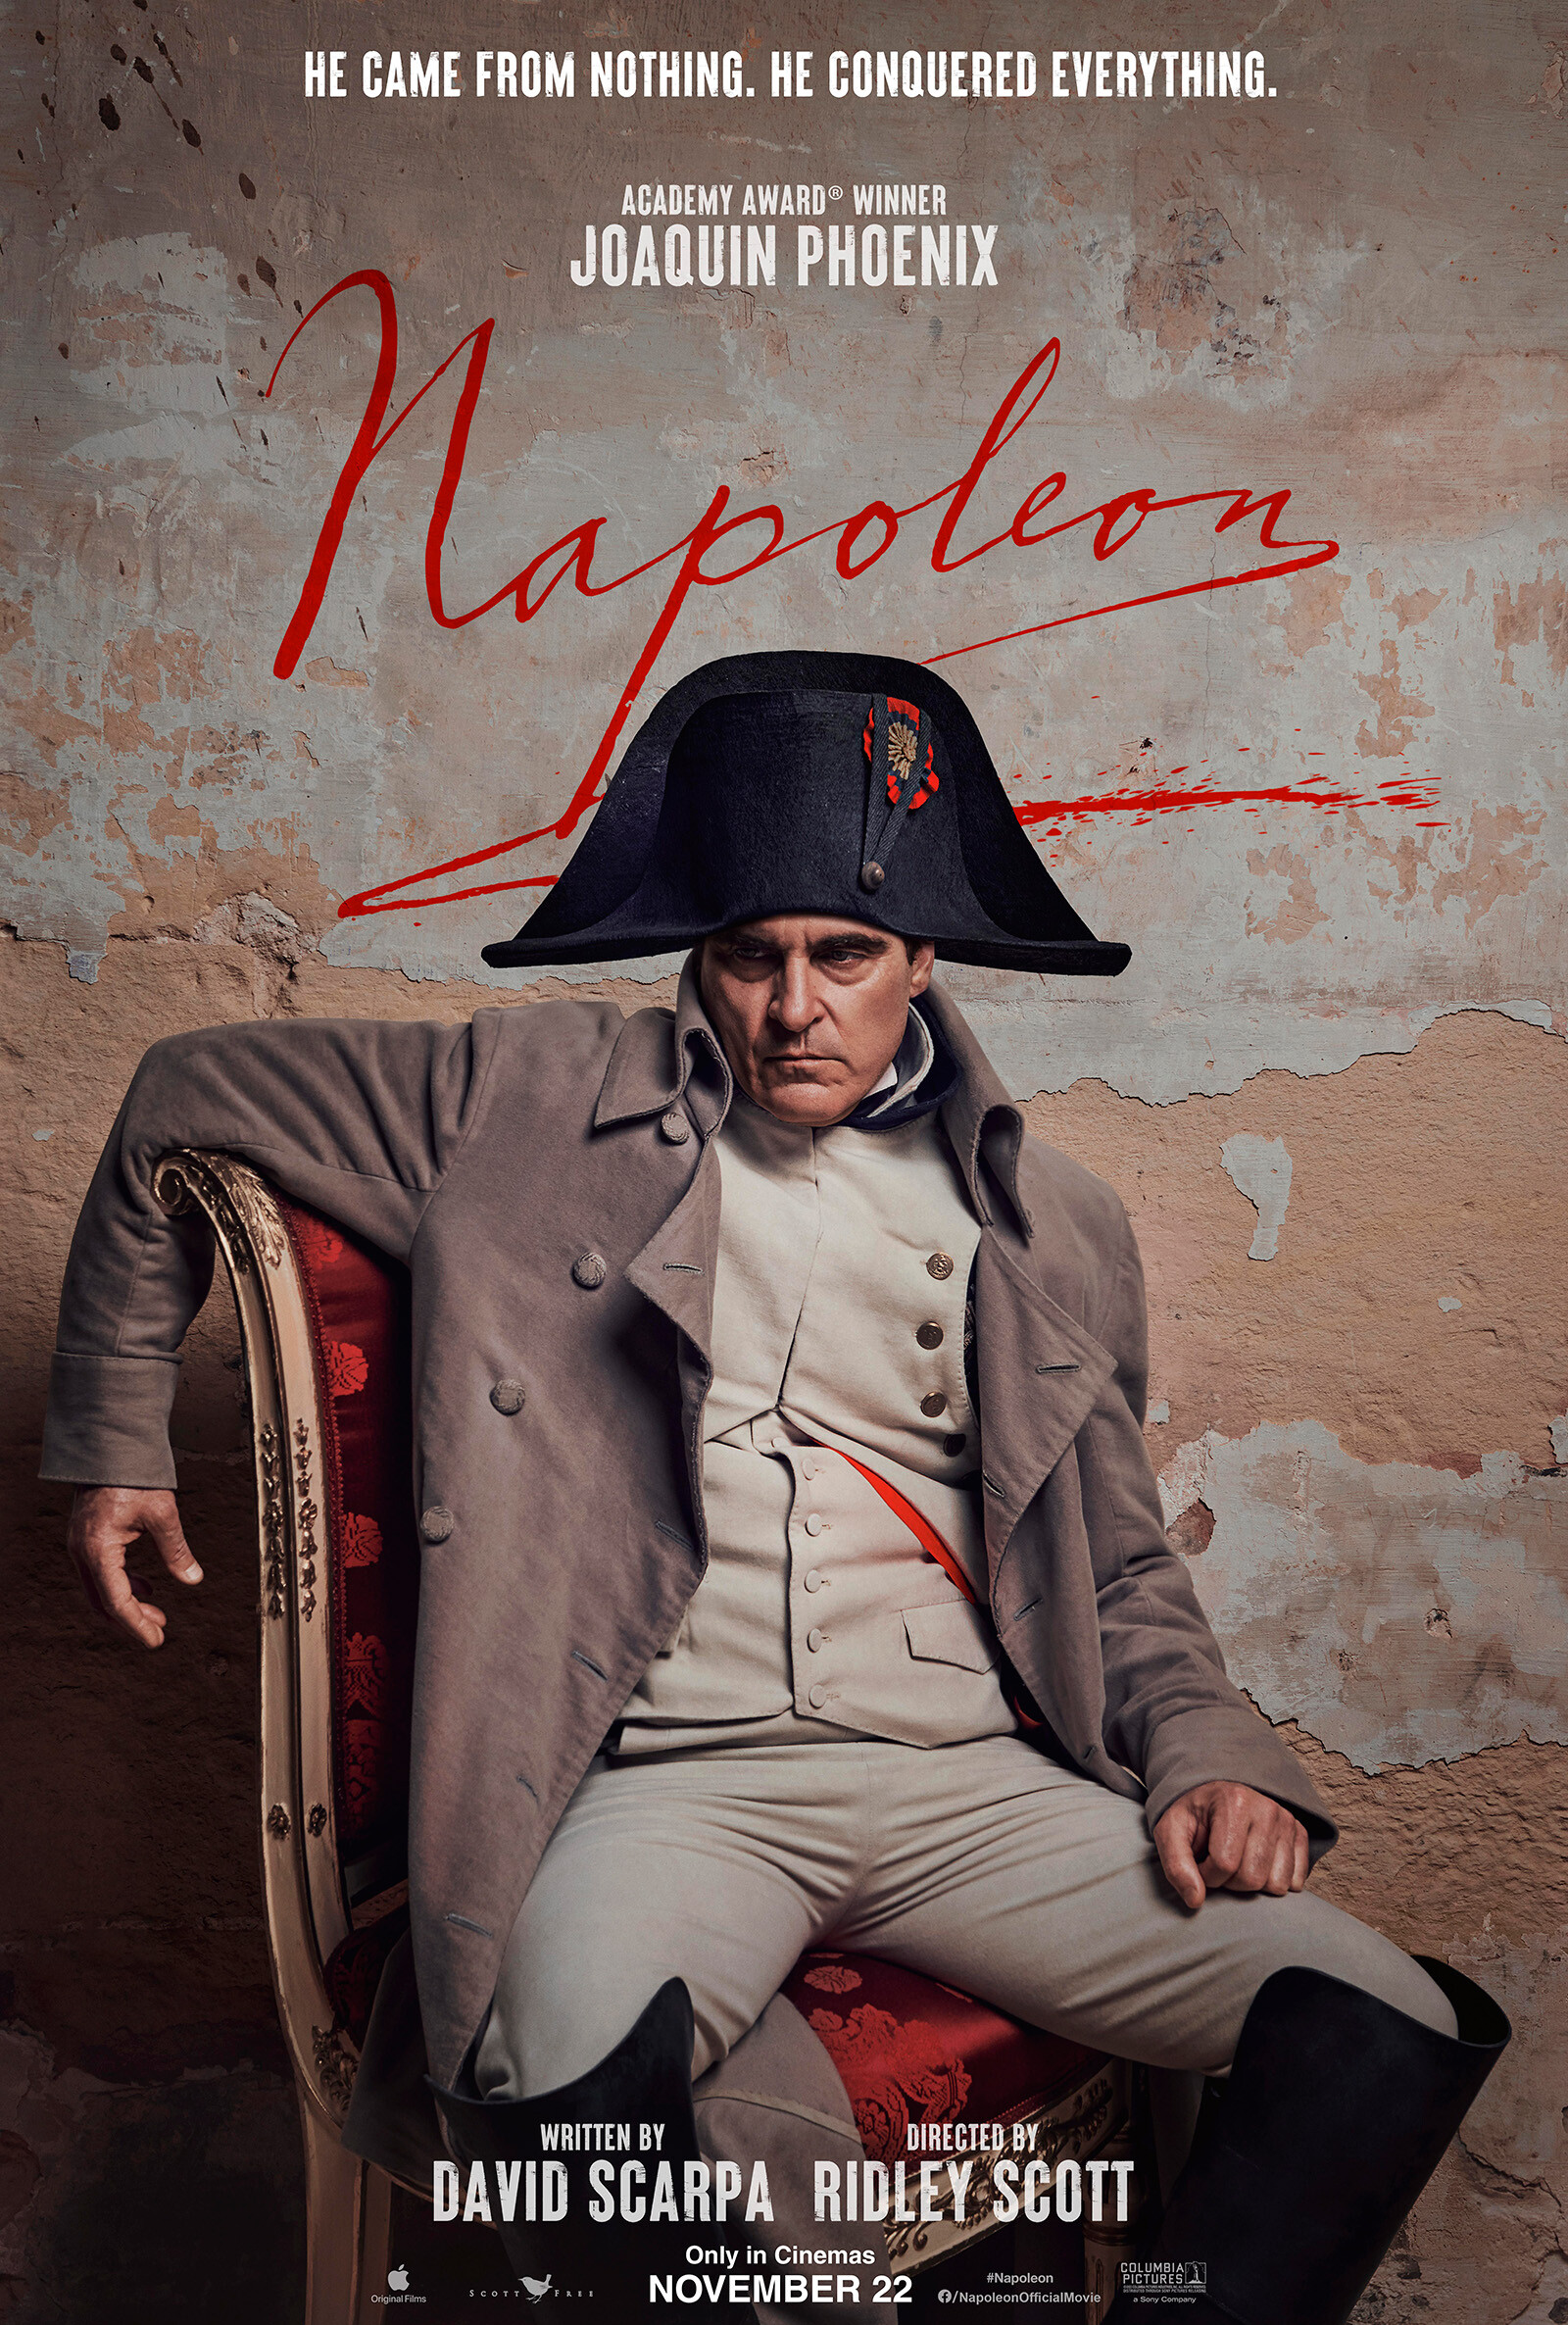 Появился первый трейлер к фильму &laquo;Наполеон&raquo; с Хоакином Фениксом